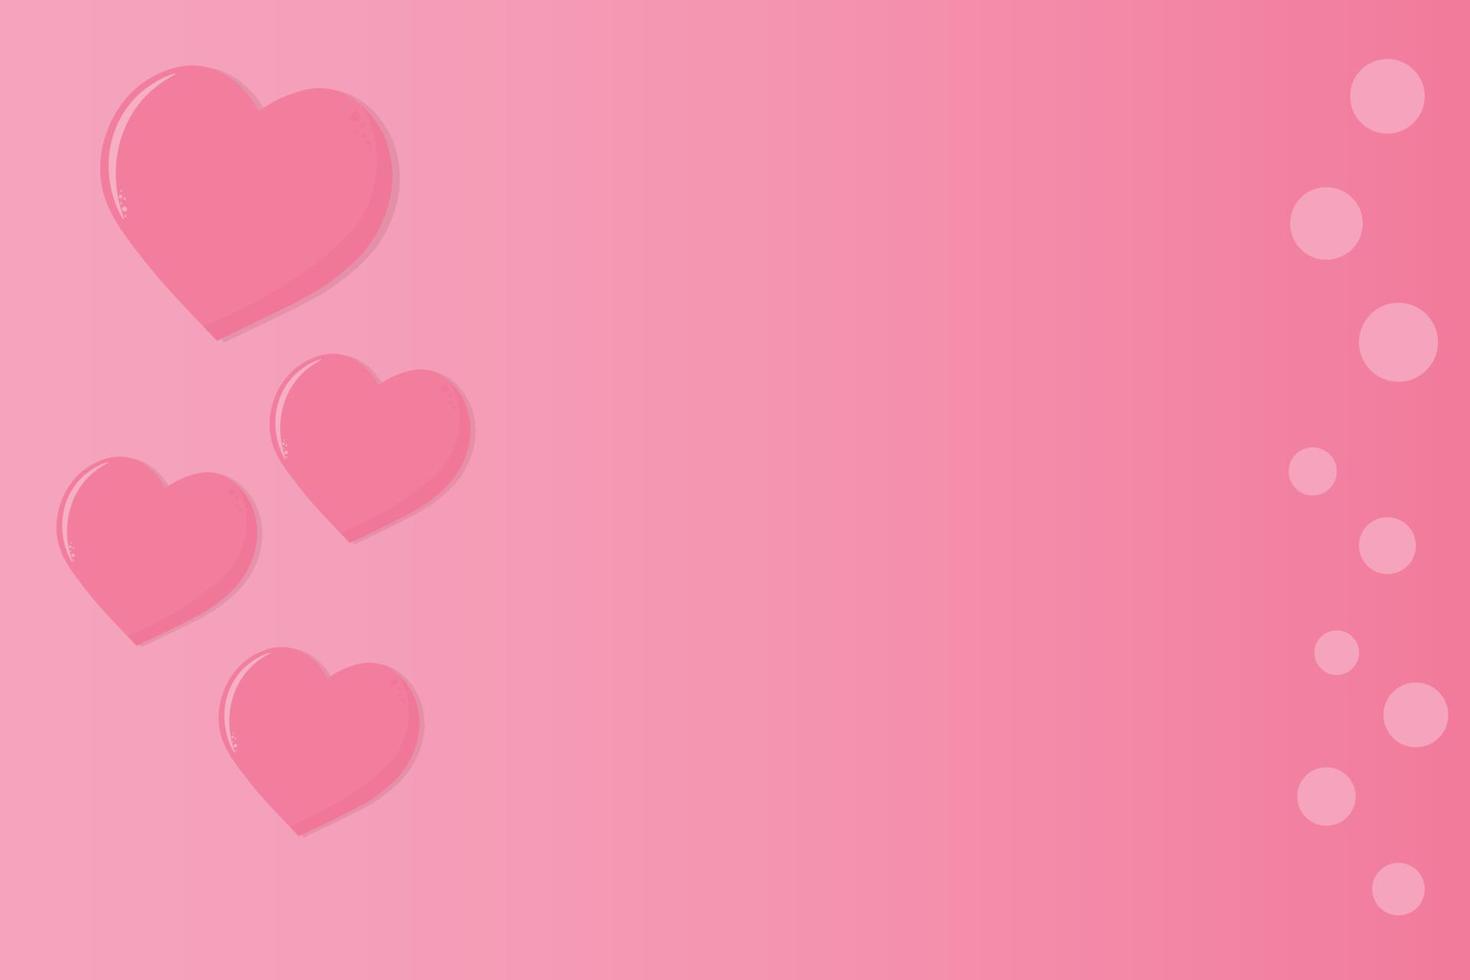 farbenfrohe rosa Tapetenelemente in Form von Herzen, die auf rosa Hintergrund fliegen. liebes- und valentinstagkonzept. Geburtstags-Grußkarten-Design. vektor